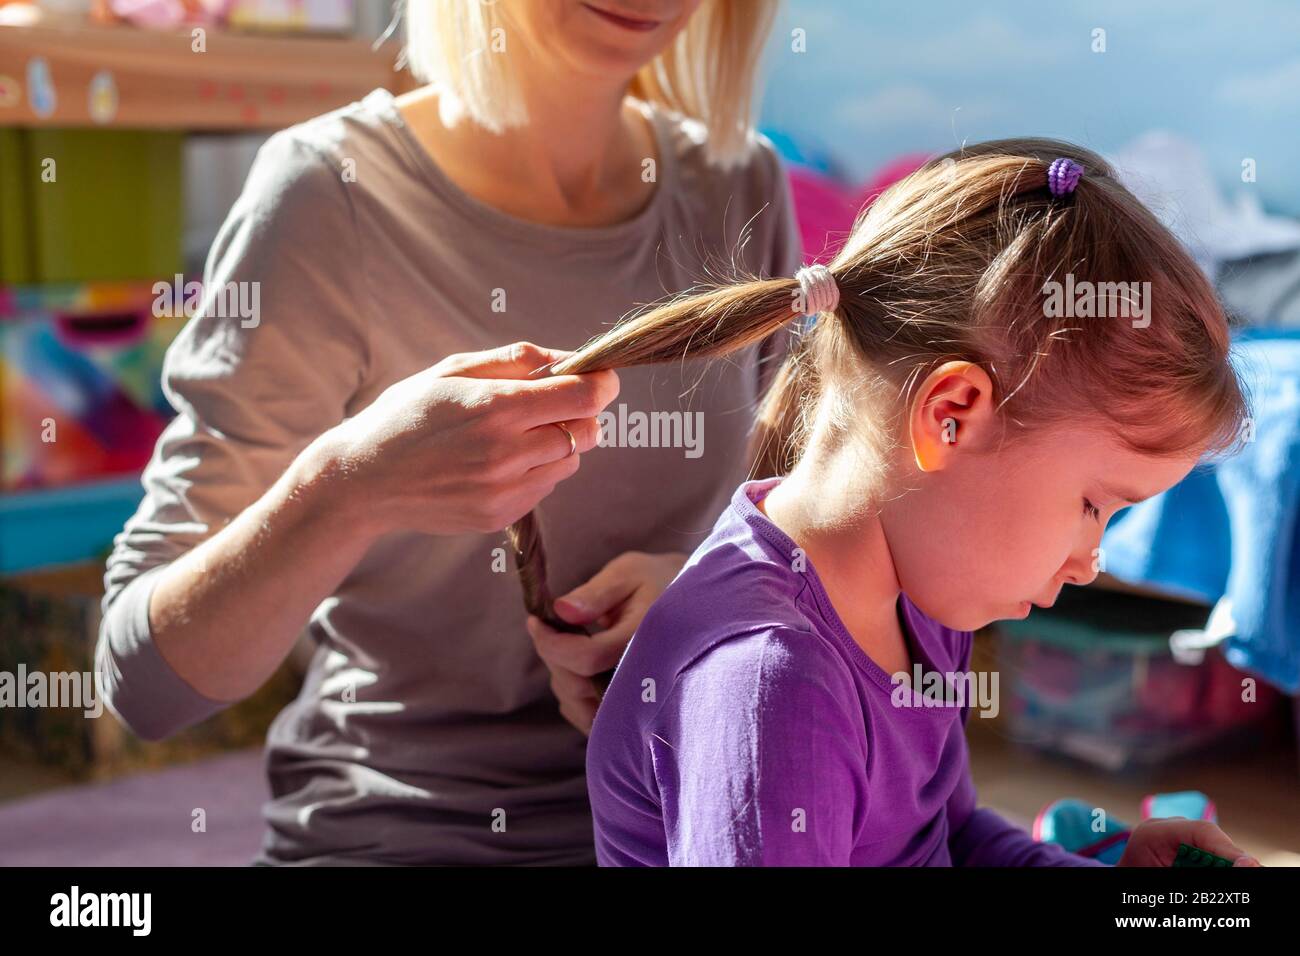 La madre styling i suoi capelli delle figliuole, tenendolo fare i suoi ponytails. Mamma e figlia chiudono momenti intimi. Bambini, capelli bambini, luce solare, bambini Foto Stock